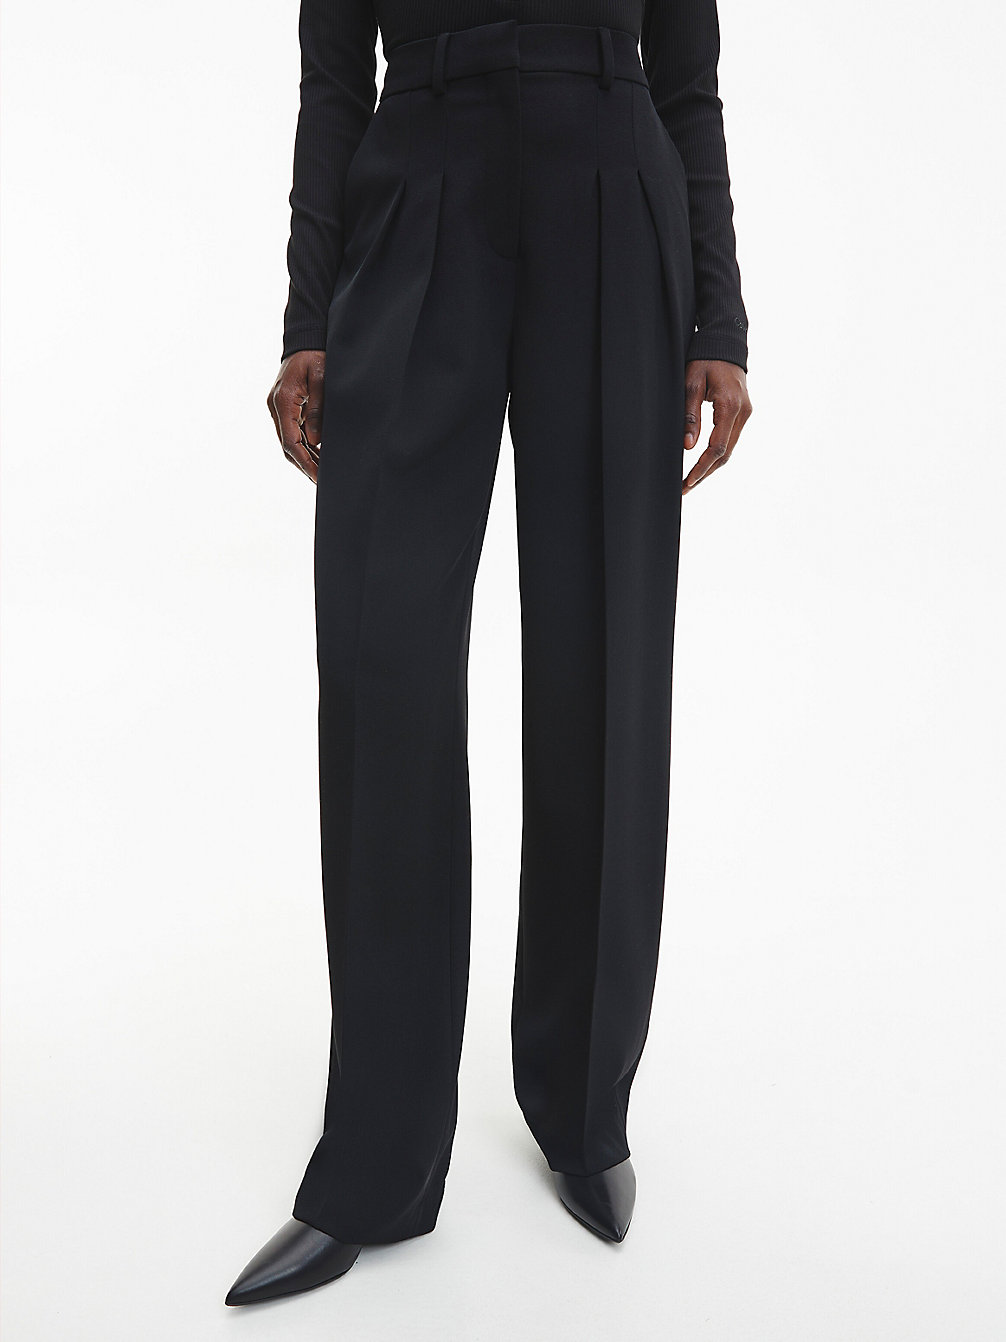 CK BLACK > Spodnie Z Plisami Z Wełnianego Twillu > undefined Kobiety - Calvin Klein